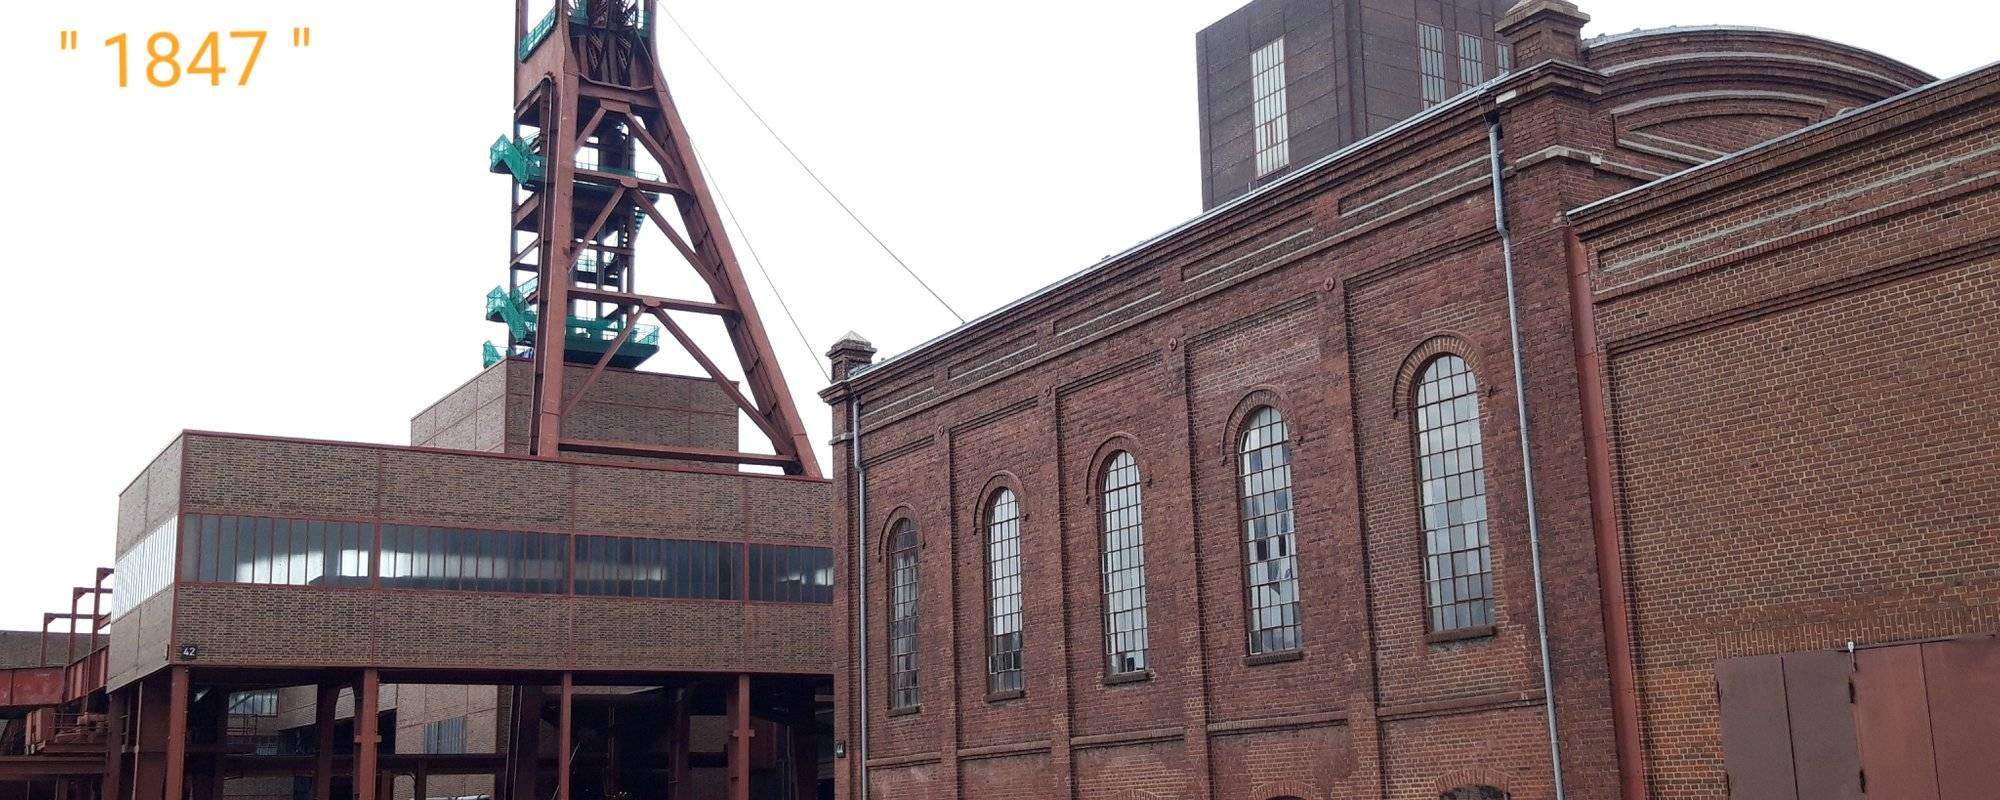 UNESCO World Heritage Site: Zollverein Coal Mining Industrial Complex: #01 - Shaft 1/2/8